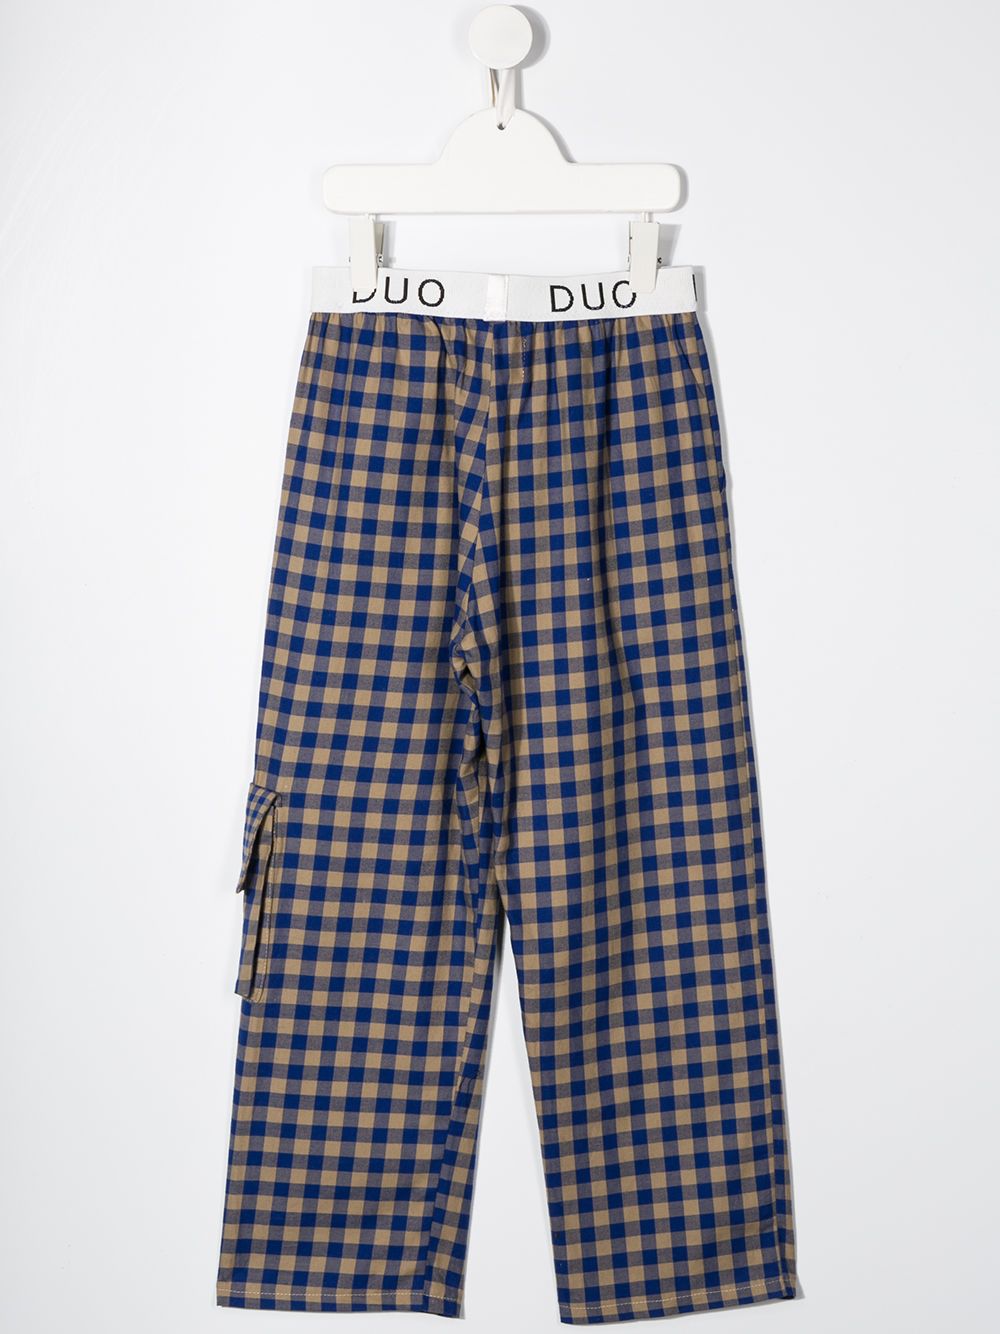 фото Duoltd брюки в клетку с карманами